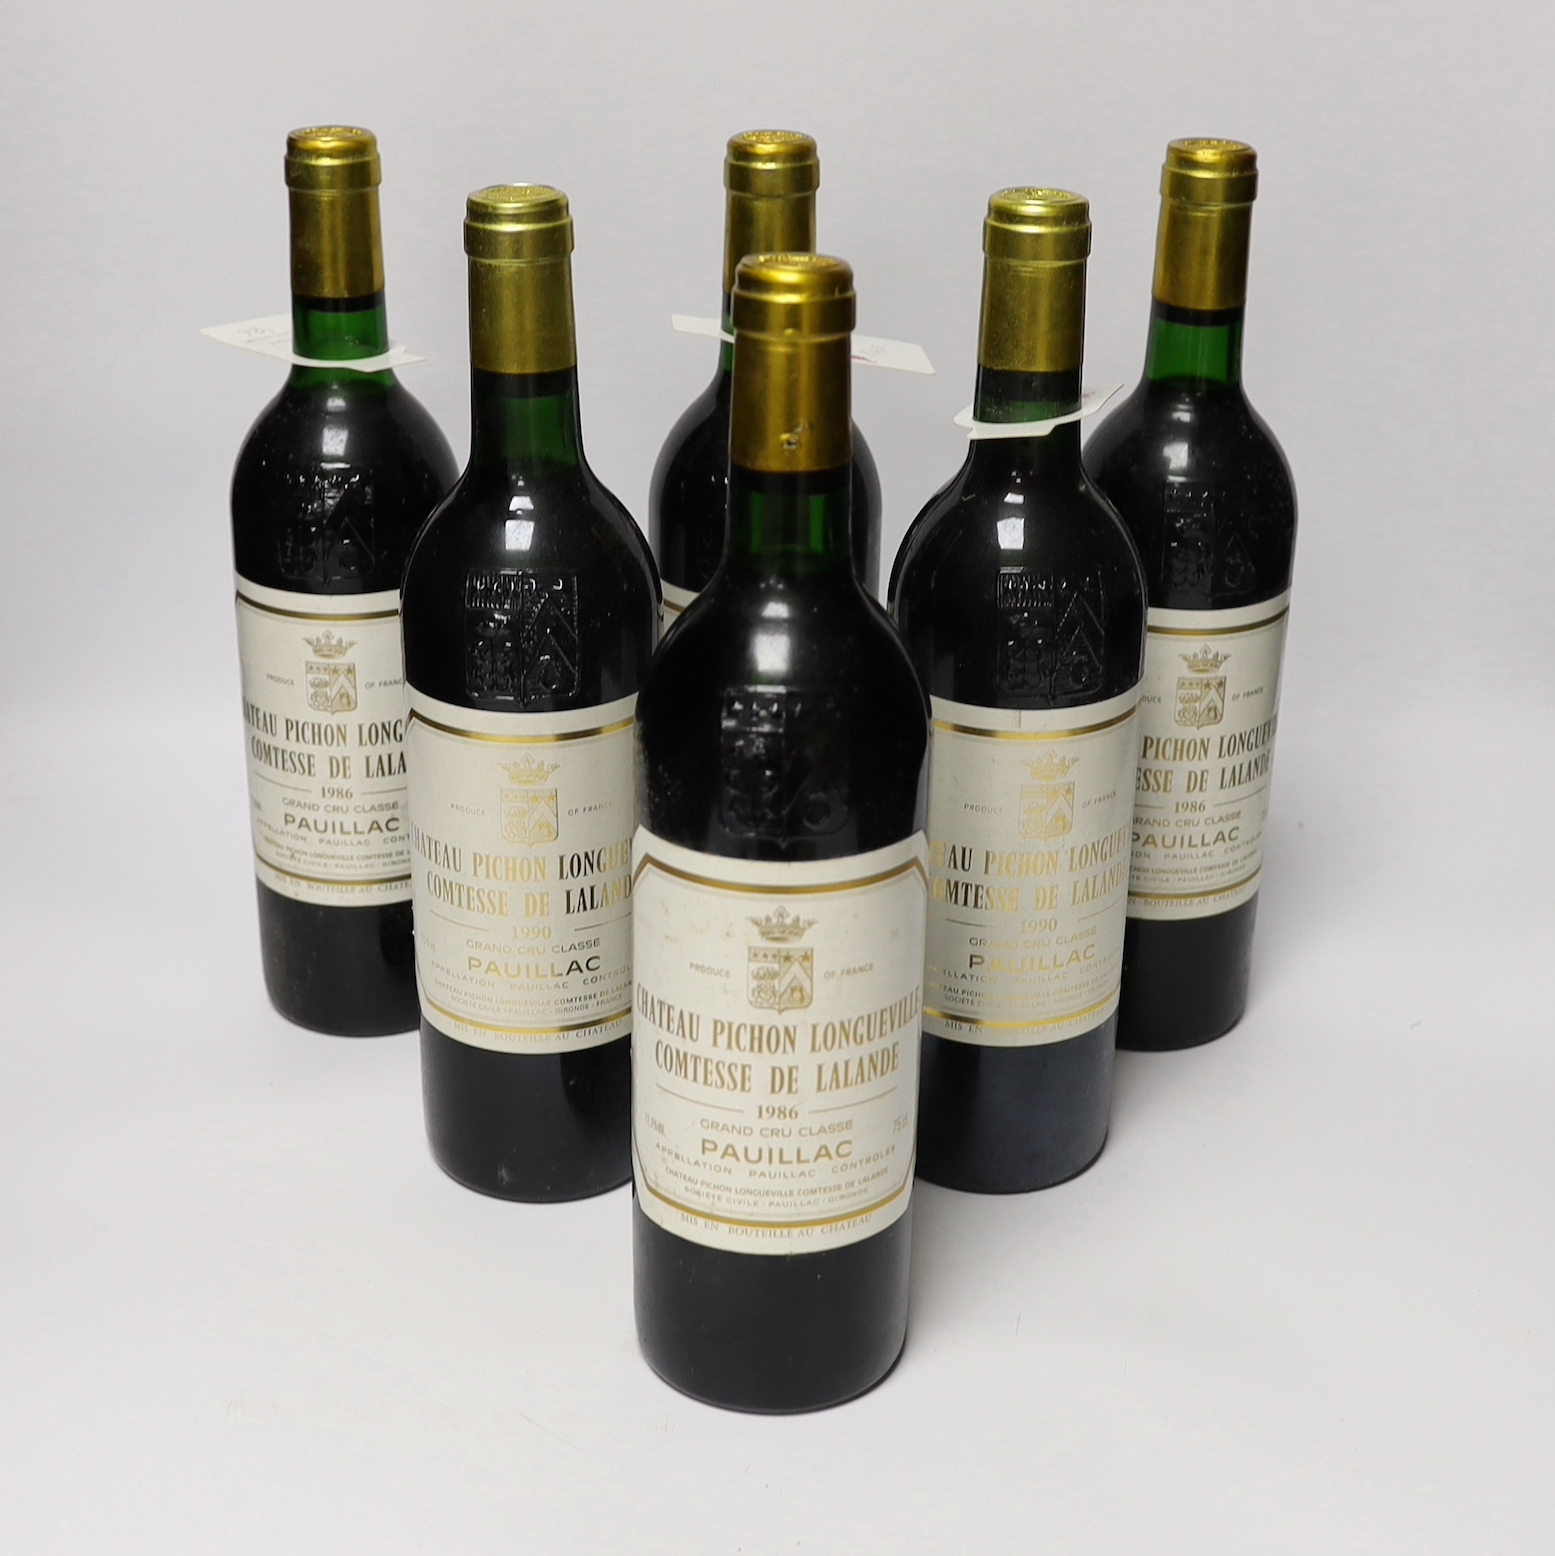 Six bottles of 1986 Chateau Pichon Longueville Comtesse De Lalande Pauillac